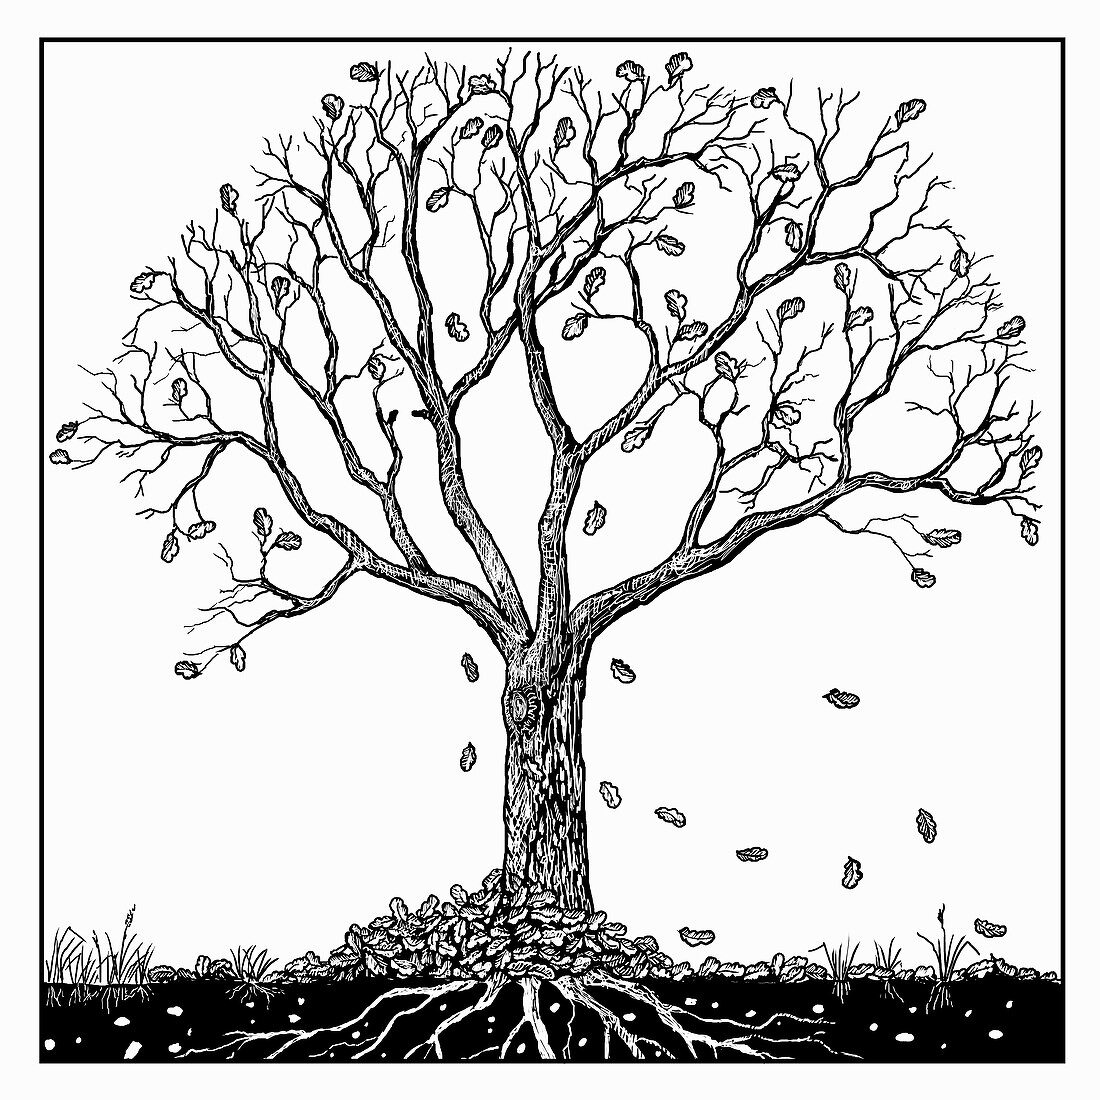 Tree in autumn, illustration